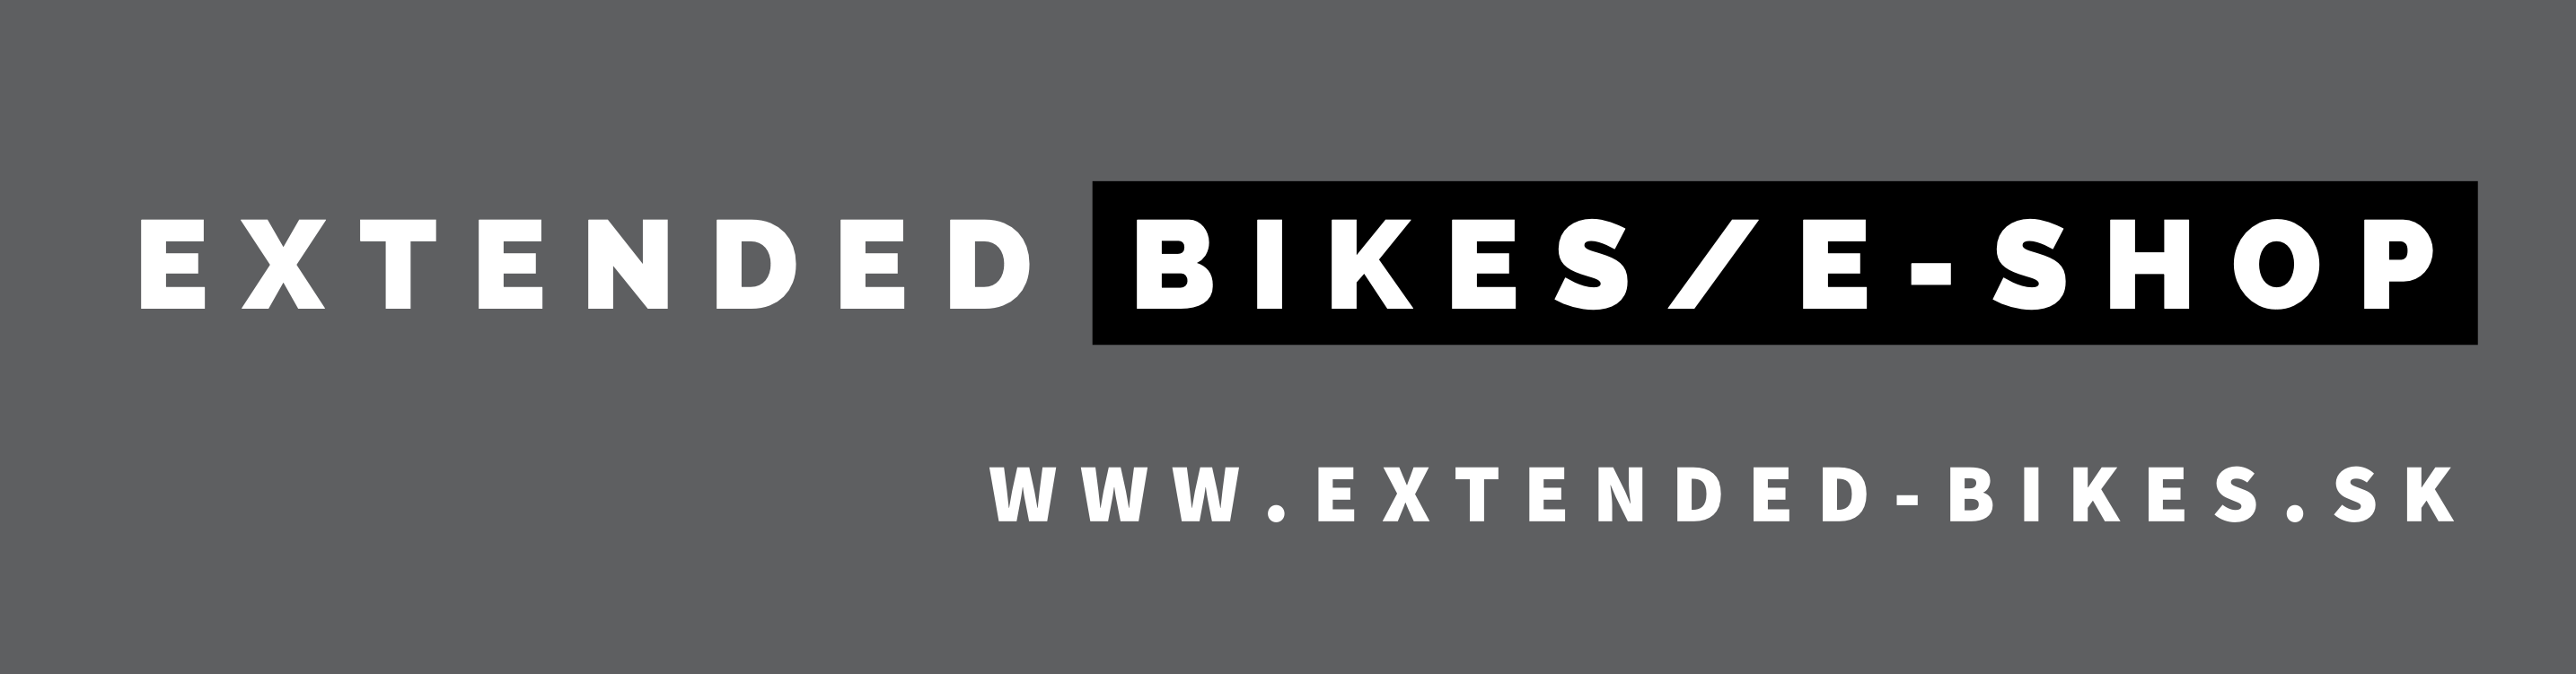 Extended-bikes